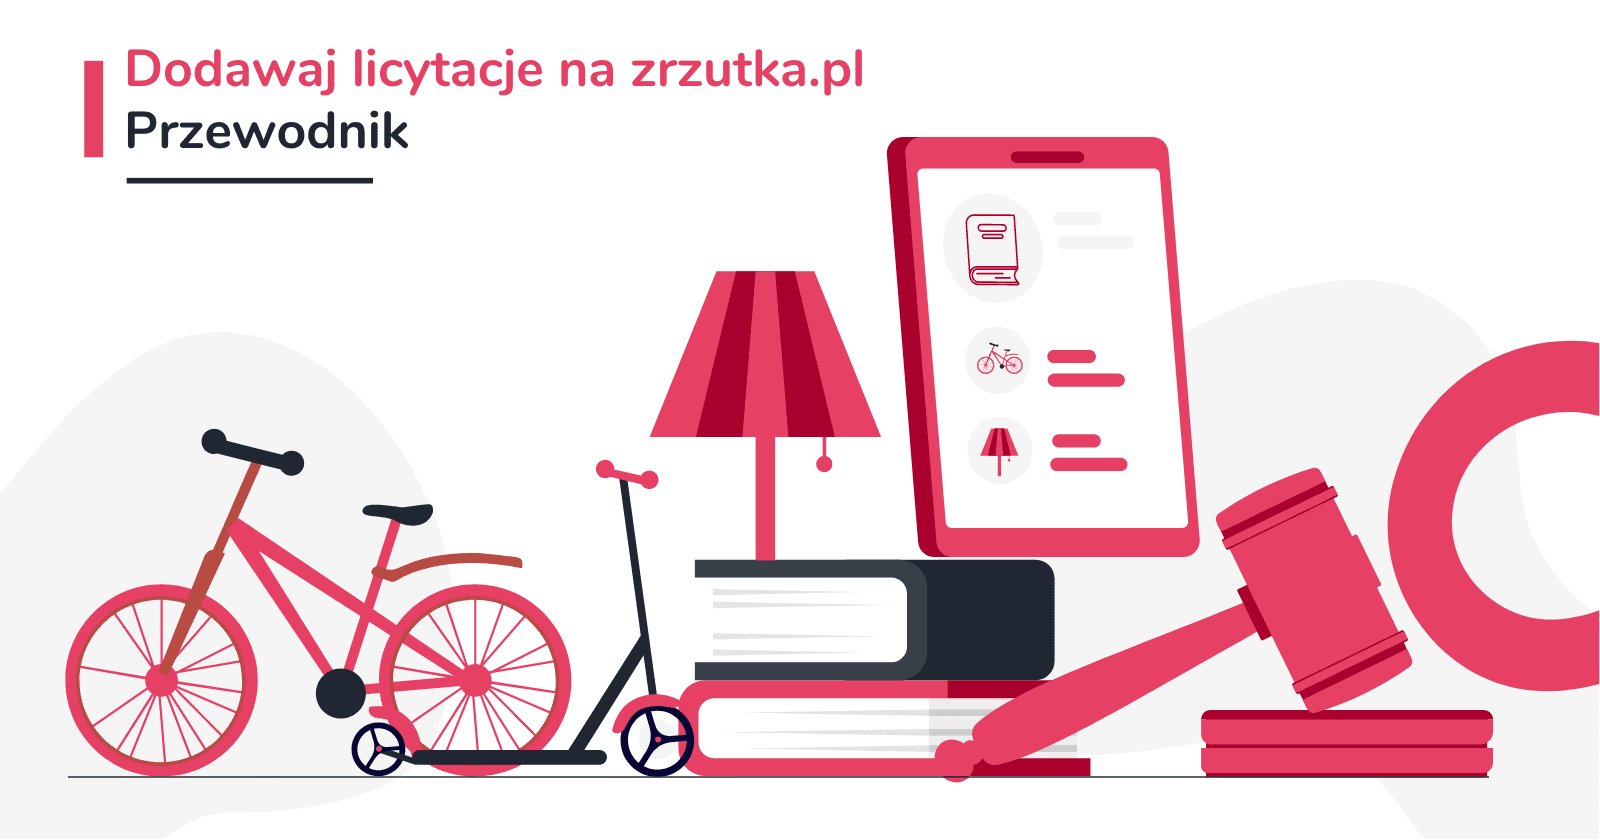 Organizuj licytacje na zrzutka.pl - przewodnik dla organizatorów zrzutek i fundatorów licytacji